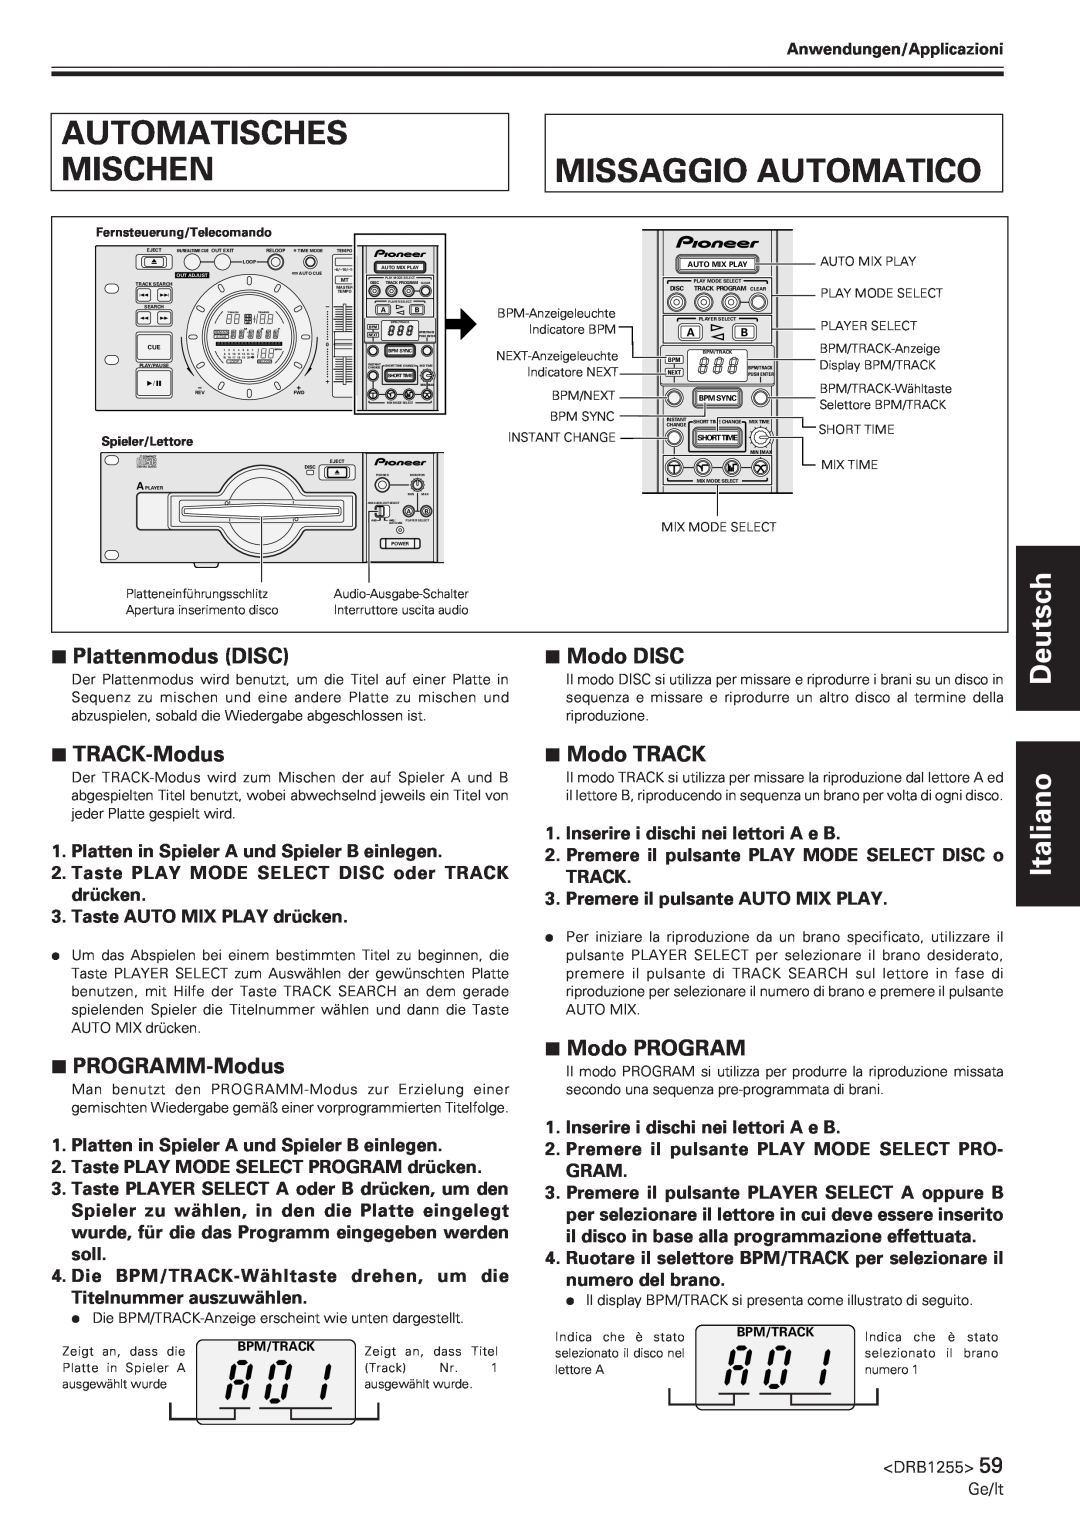 Pioneer CMX-5000 Automatisches, Mischen, Missaggio Automatico, Plattenmodus DISC, Modo DISC, 7TRACK-Modus, 7PROGRAMM-Modus 